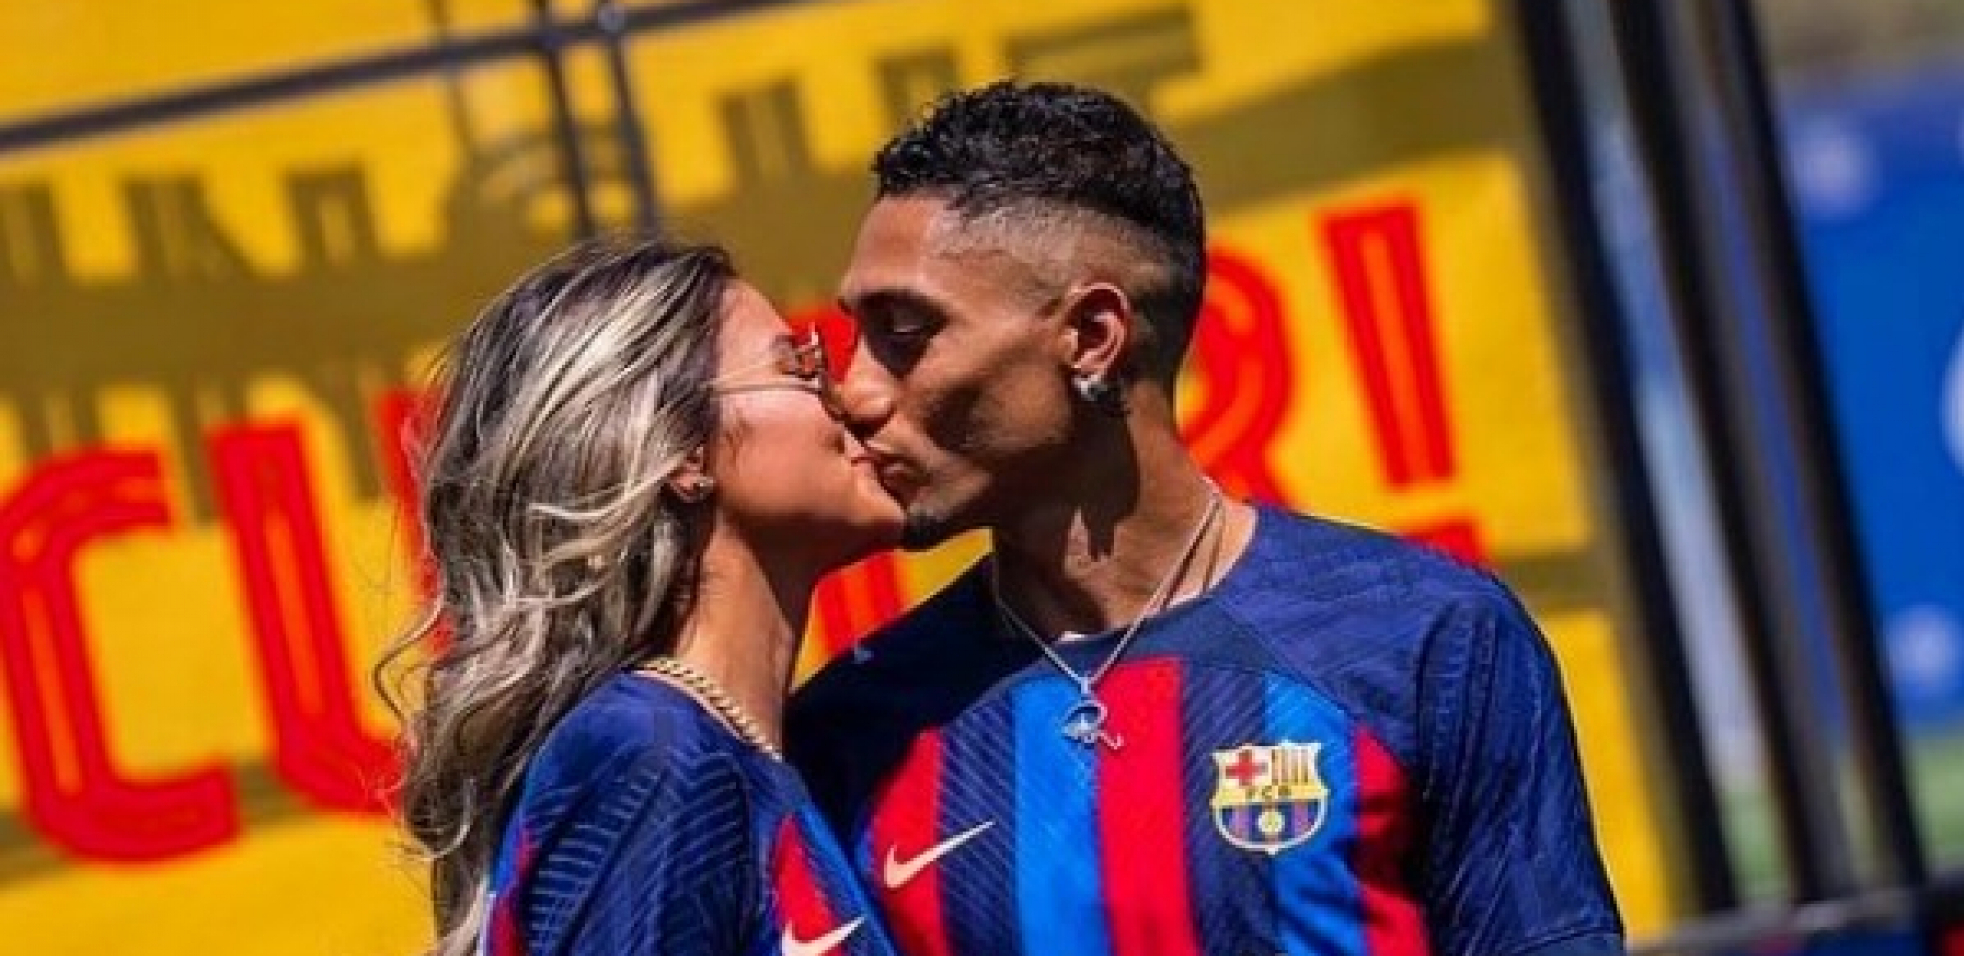 LJUBAV U BARSELONI Brazilac i pod suncem Mediterana ima najslađu podršku: Kakav sočan poljubac na Nou Kampu